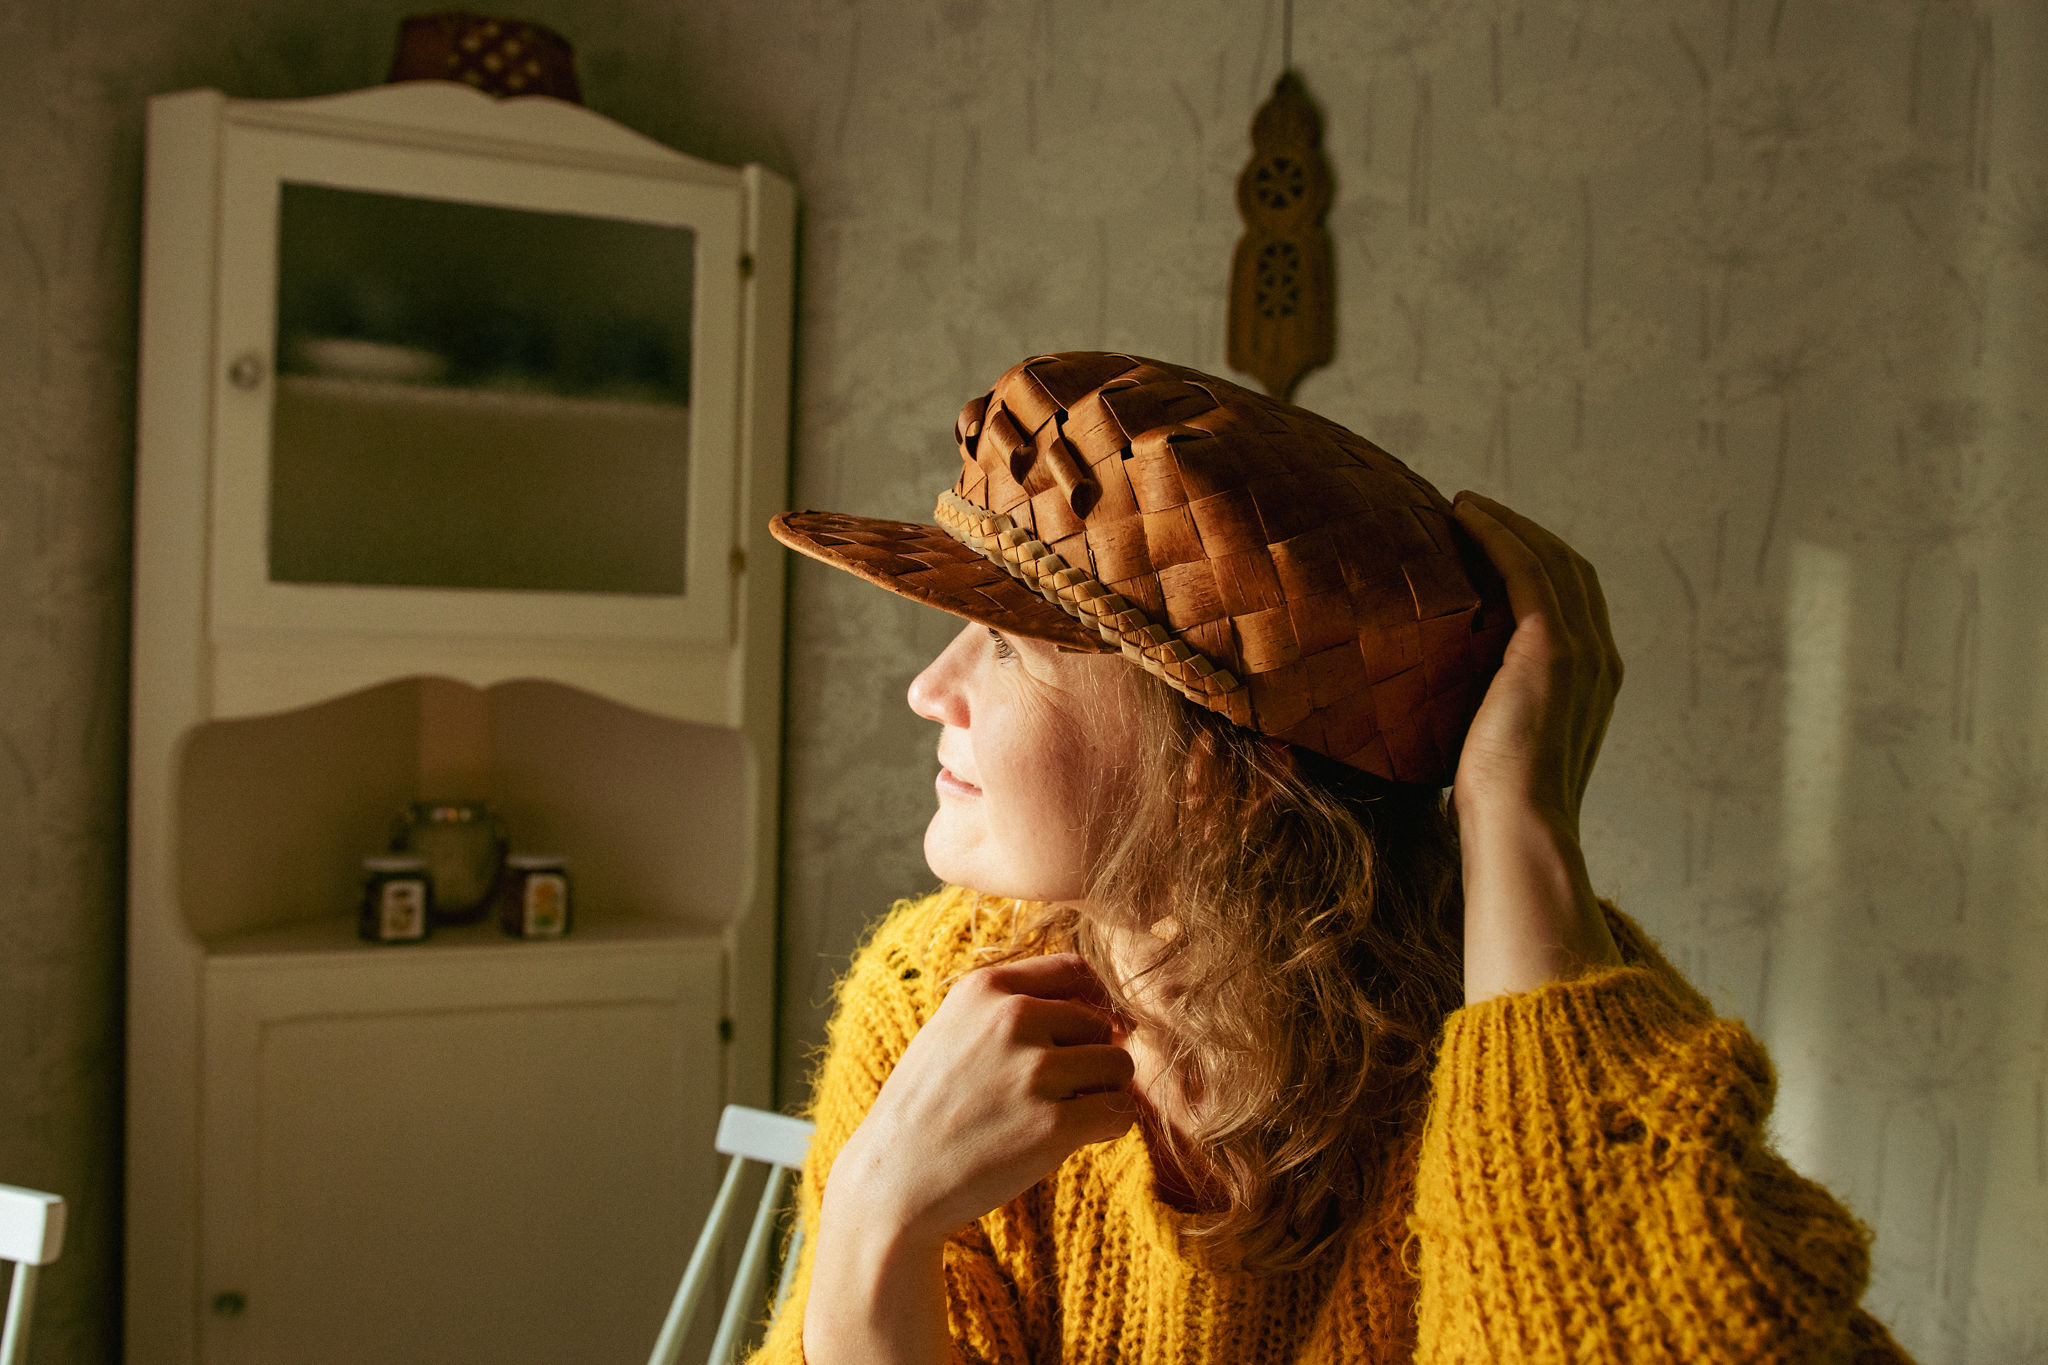 Mari saimaaLife with her handmade birch bark hat made by Kaija Karri